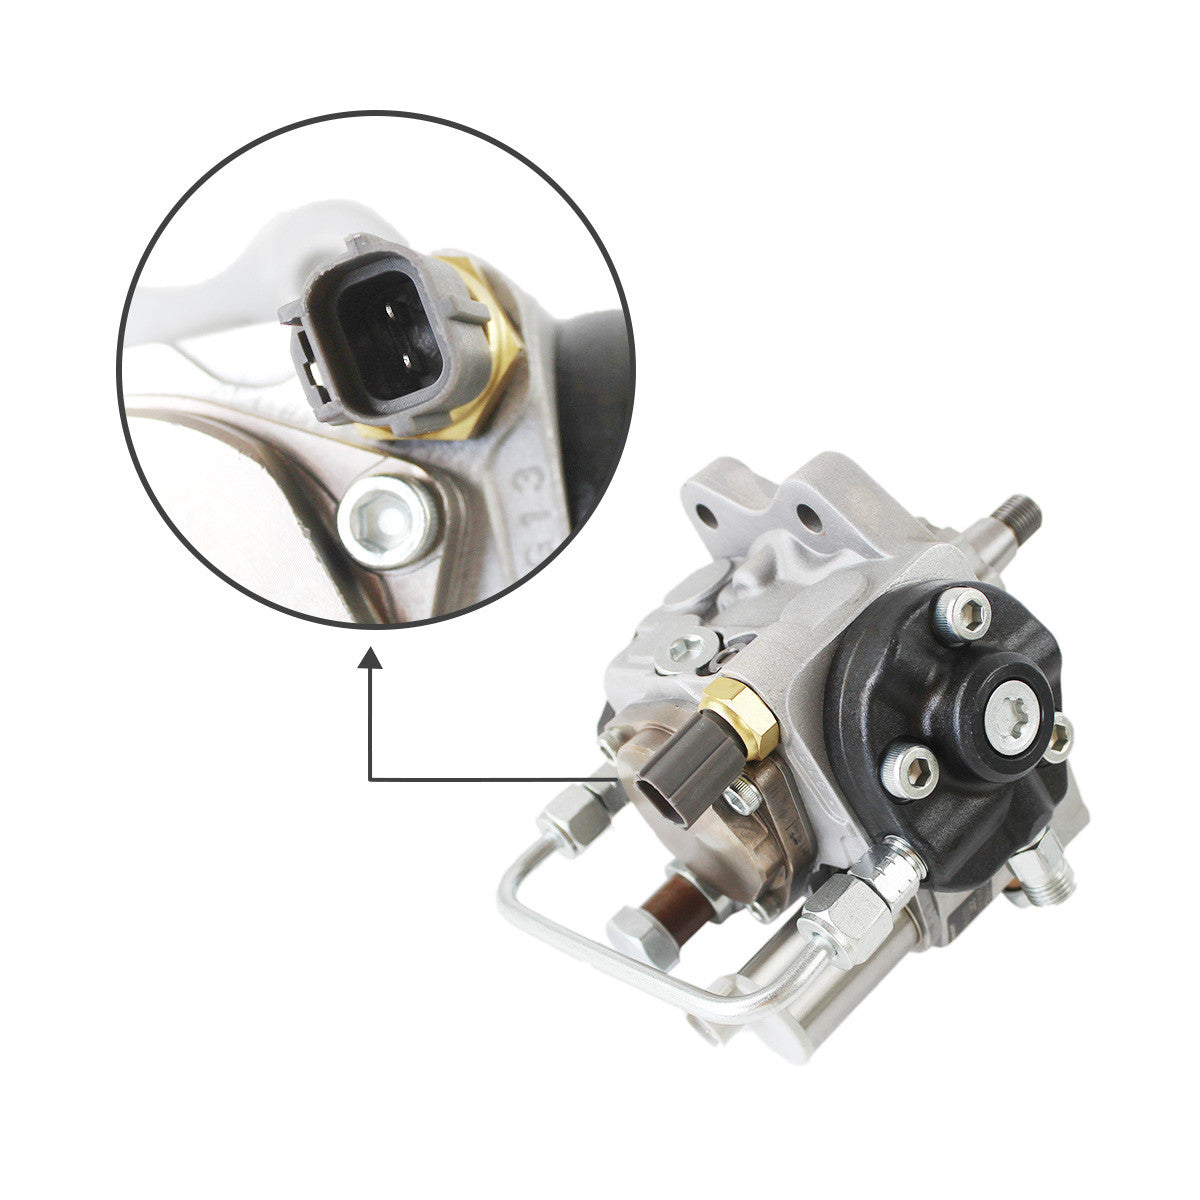 294050-0060 RE546126 RE534156 Fuel Injection Pump for S450 Engine John Deere Tractor - Sinocmp